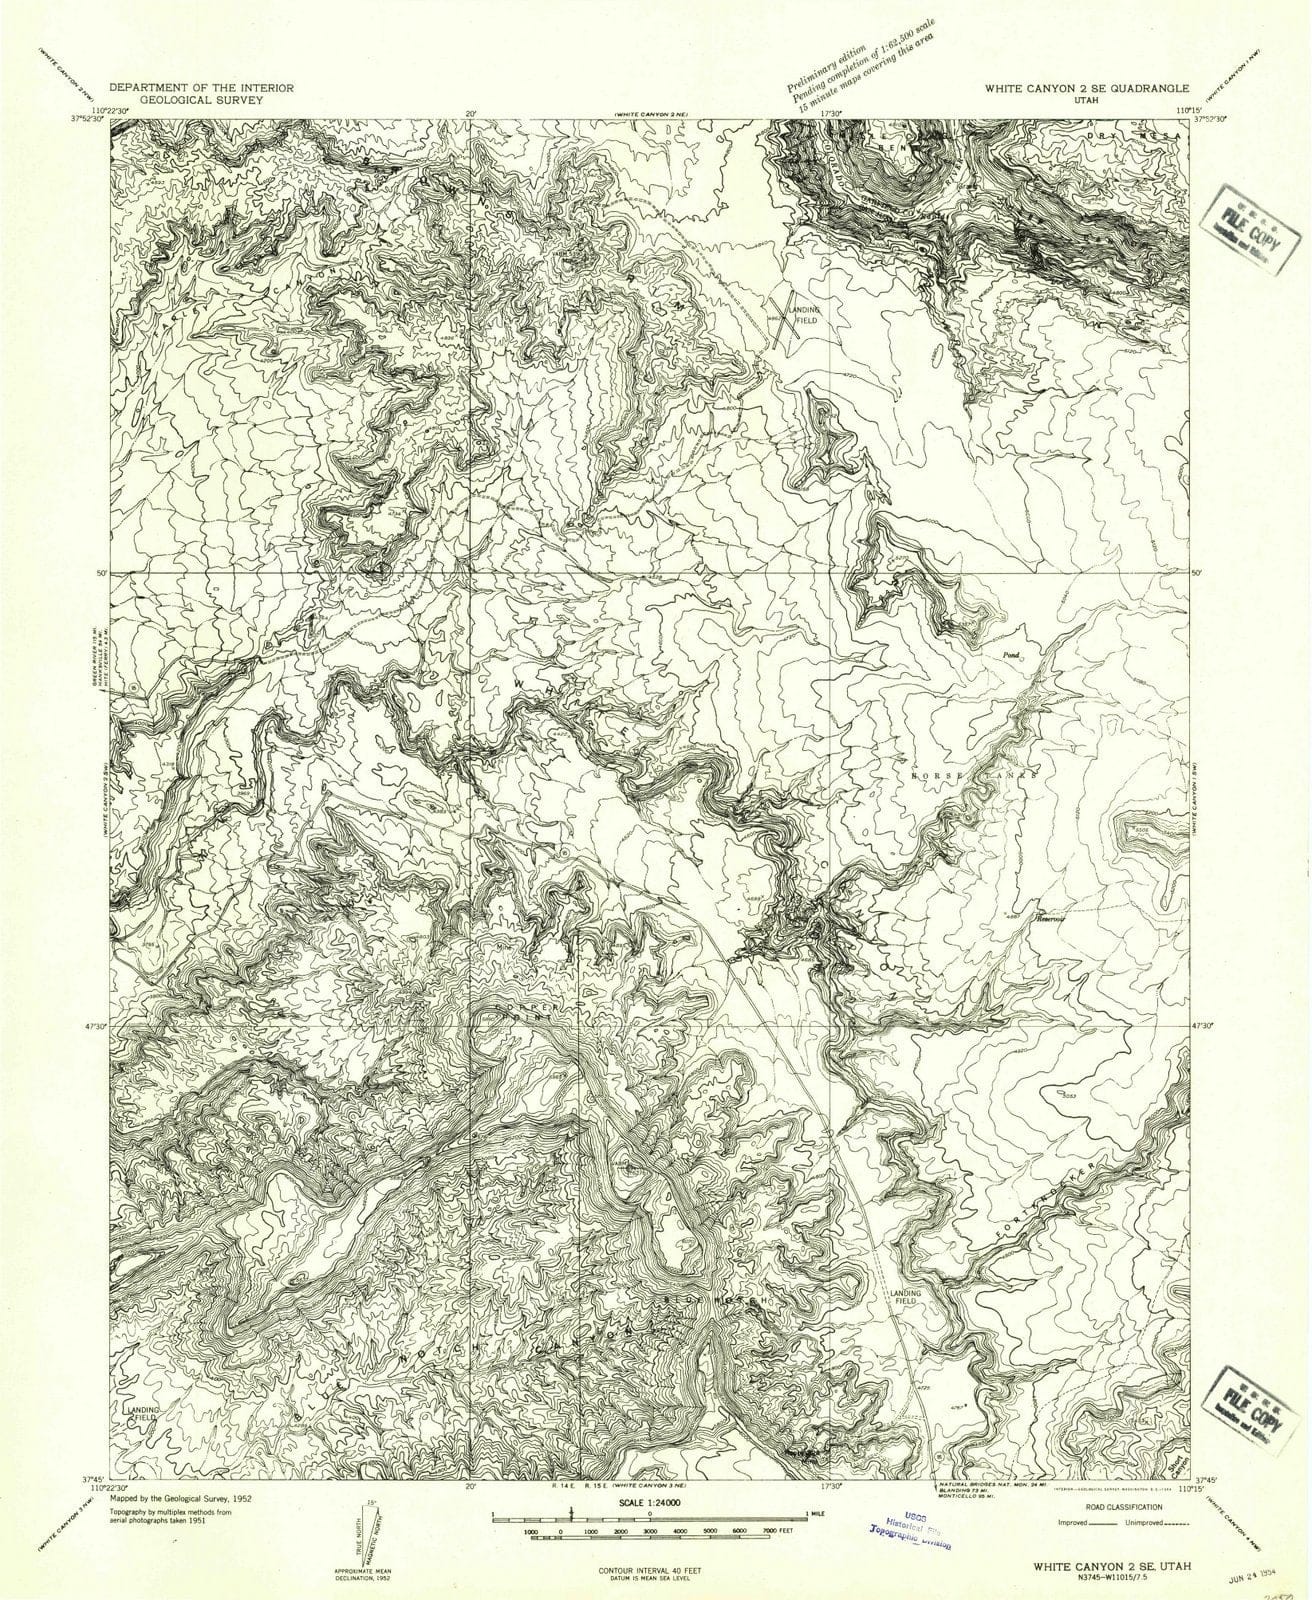 1954 White Canyon 2, UT - Utah - USGS Topographic Map v3